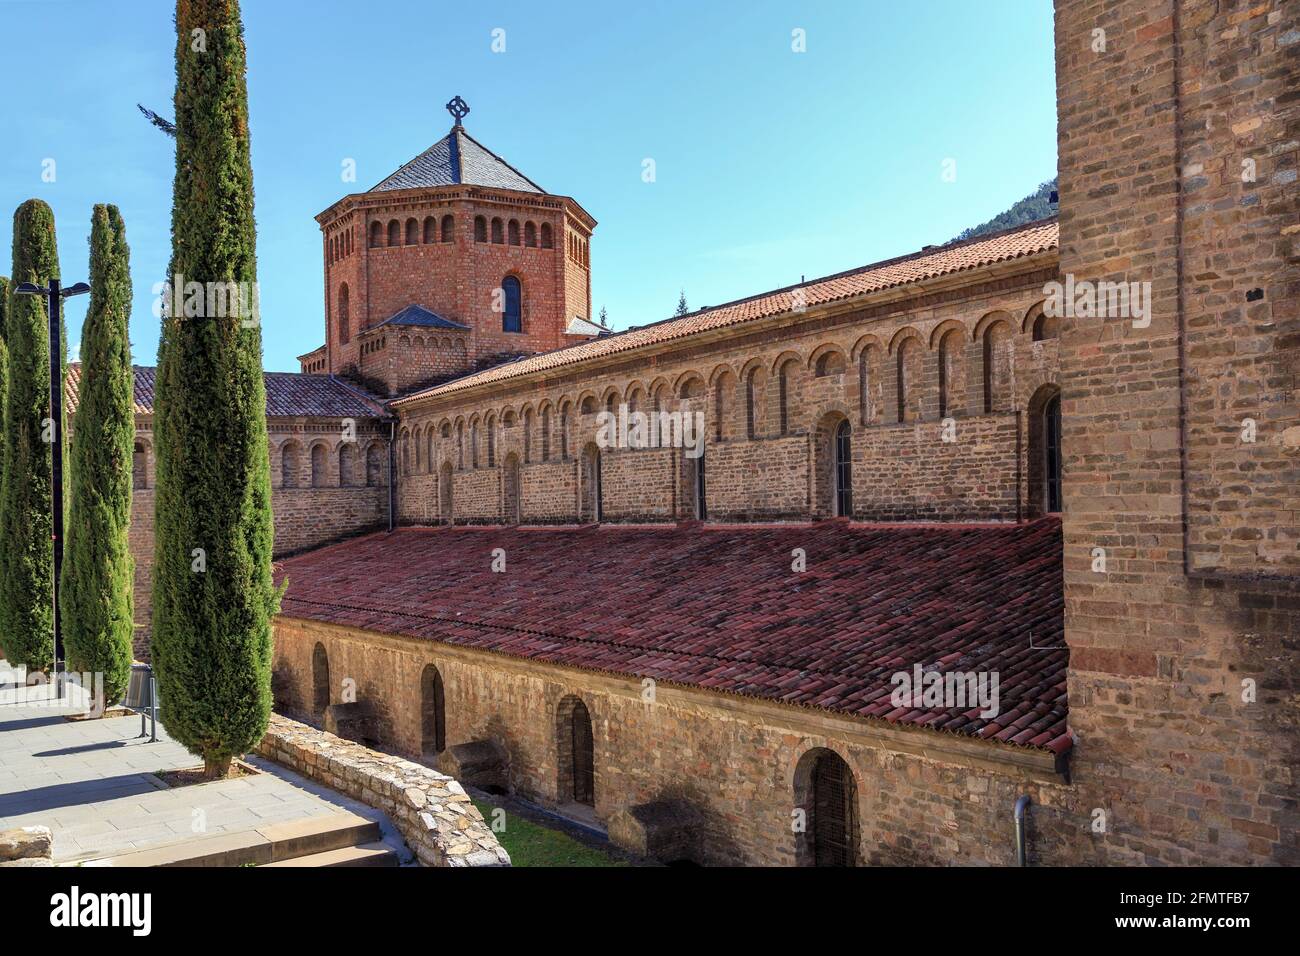 Chiesa di Santa Maria de Ripoll monastero, Catalogna, Spagna. Fondata nel 879, è considerata la culla della nazione catalana. Foto Stock